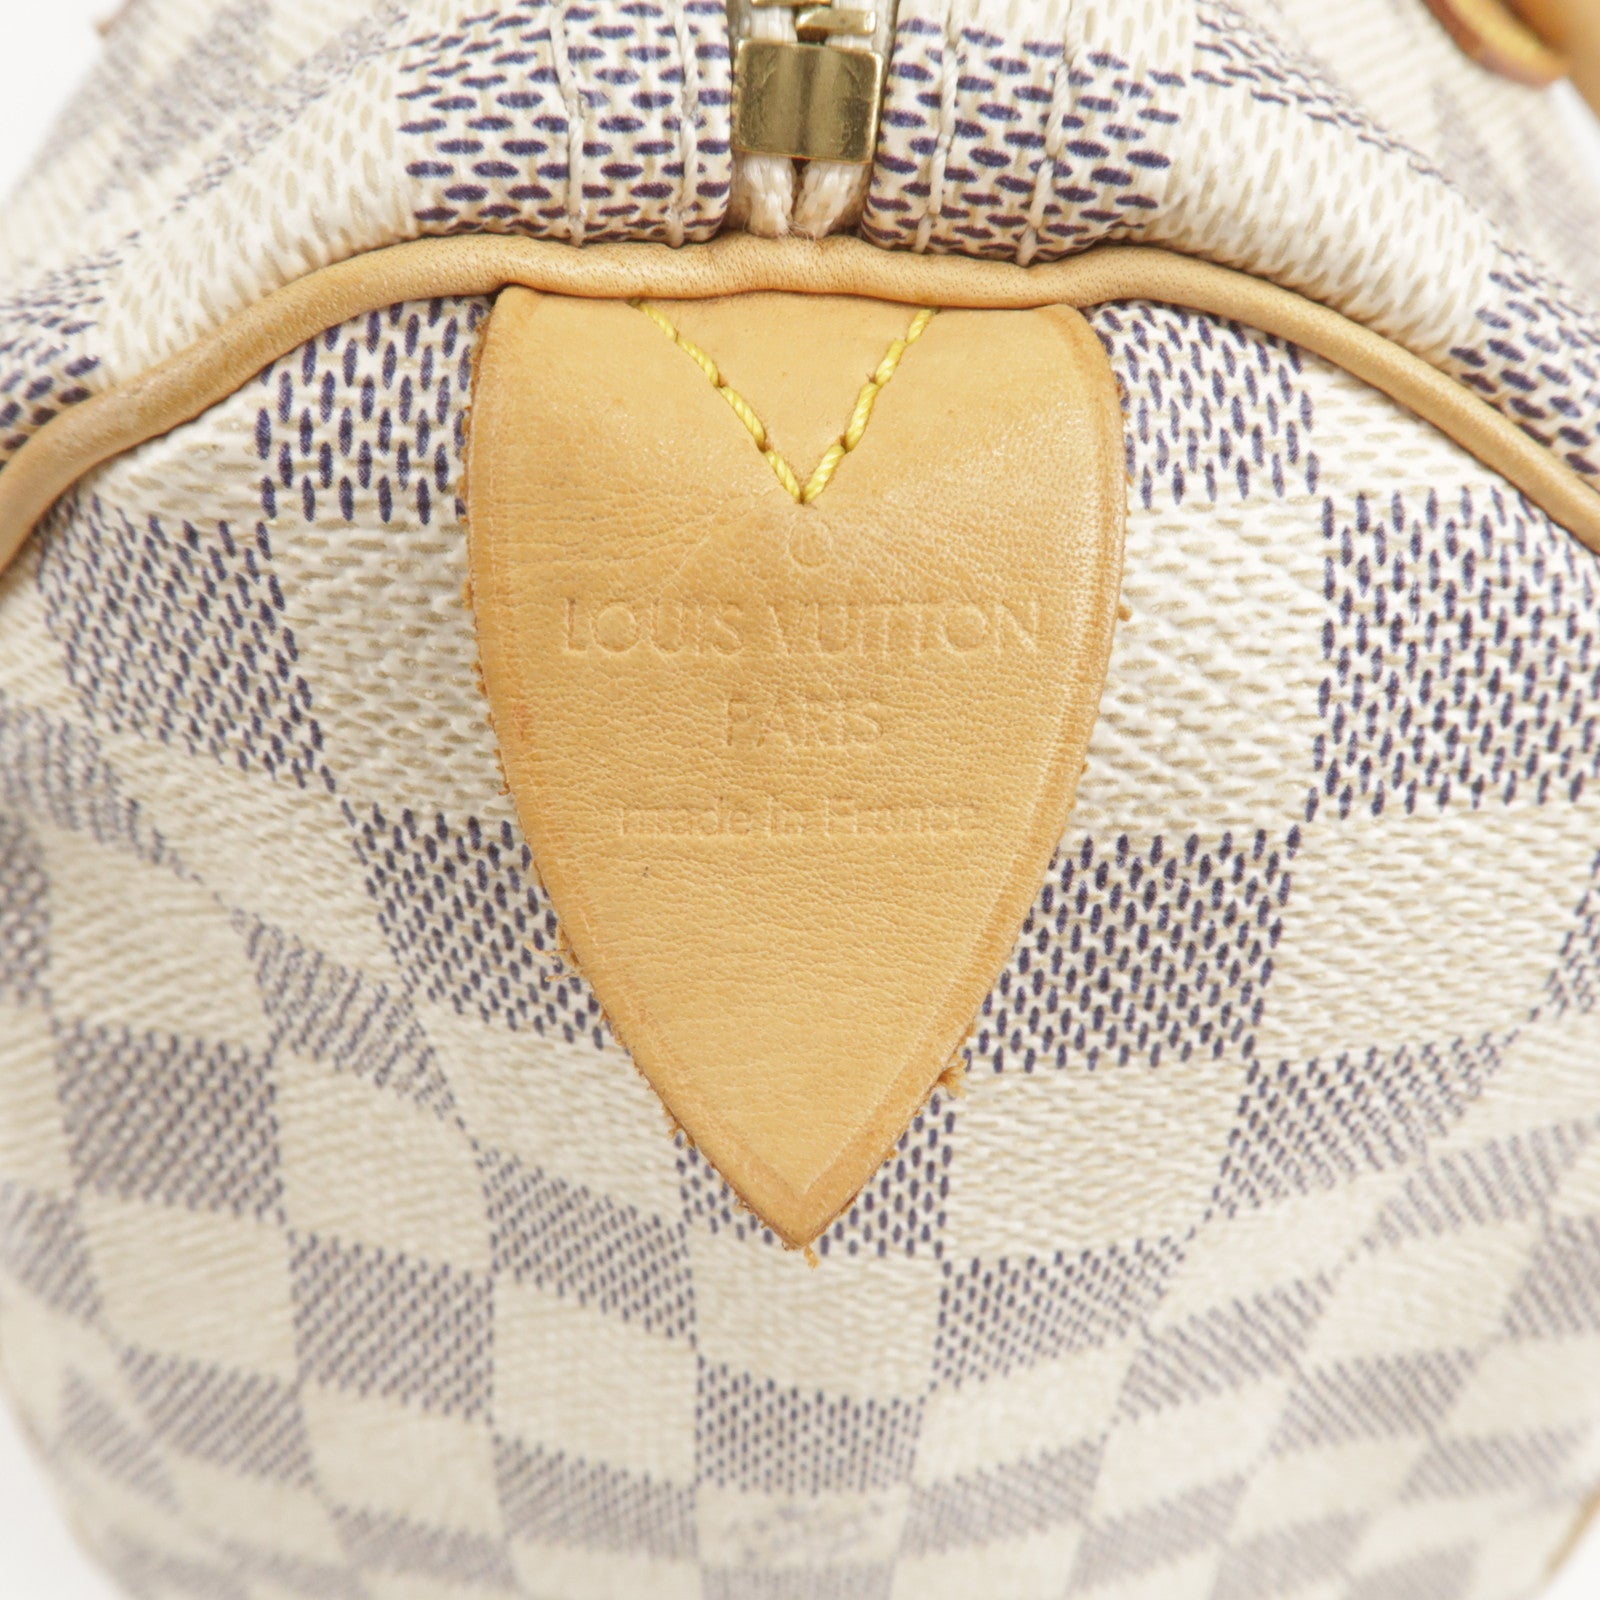 Louis Vuitton, Bags, Authentic 0 Louis Vuitton Speedy 30